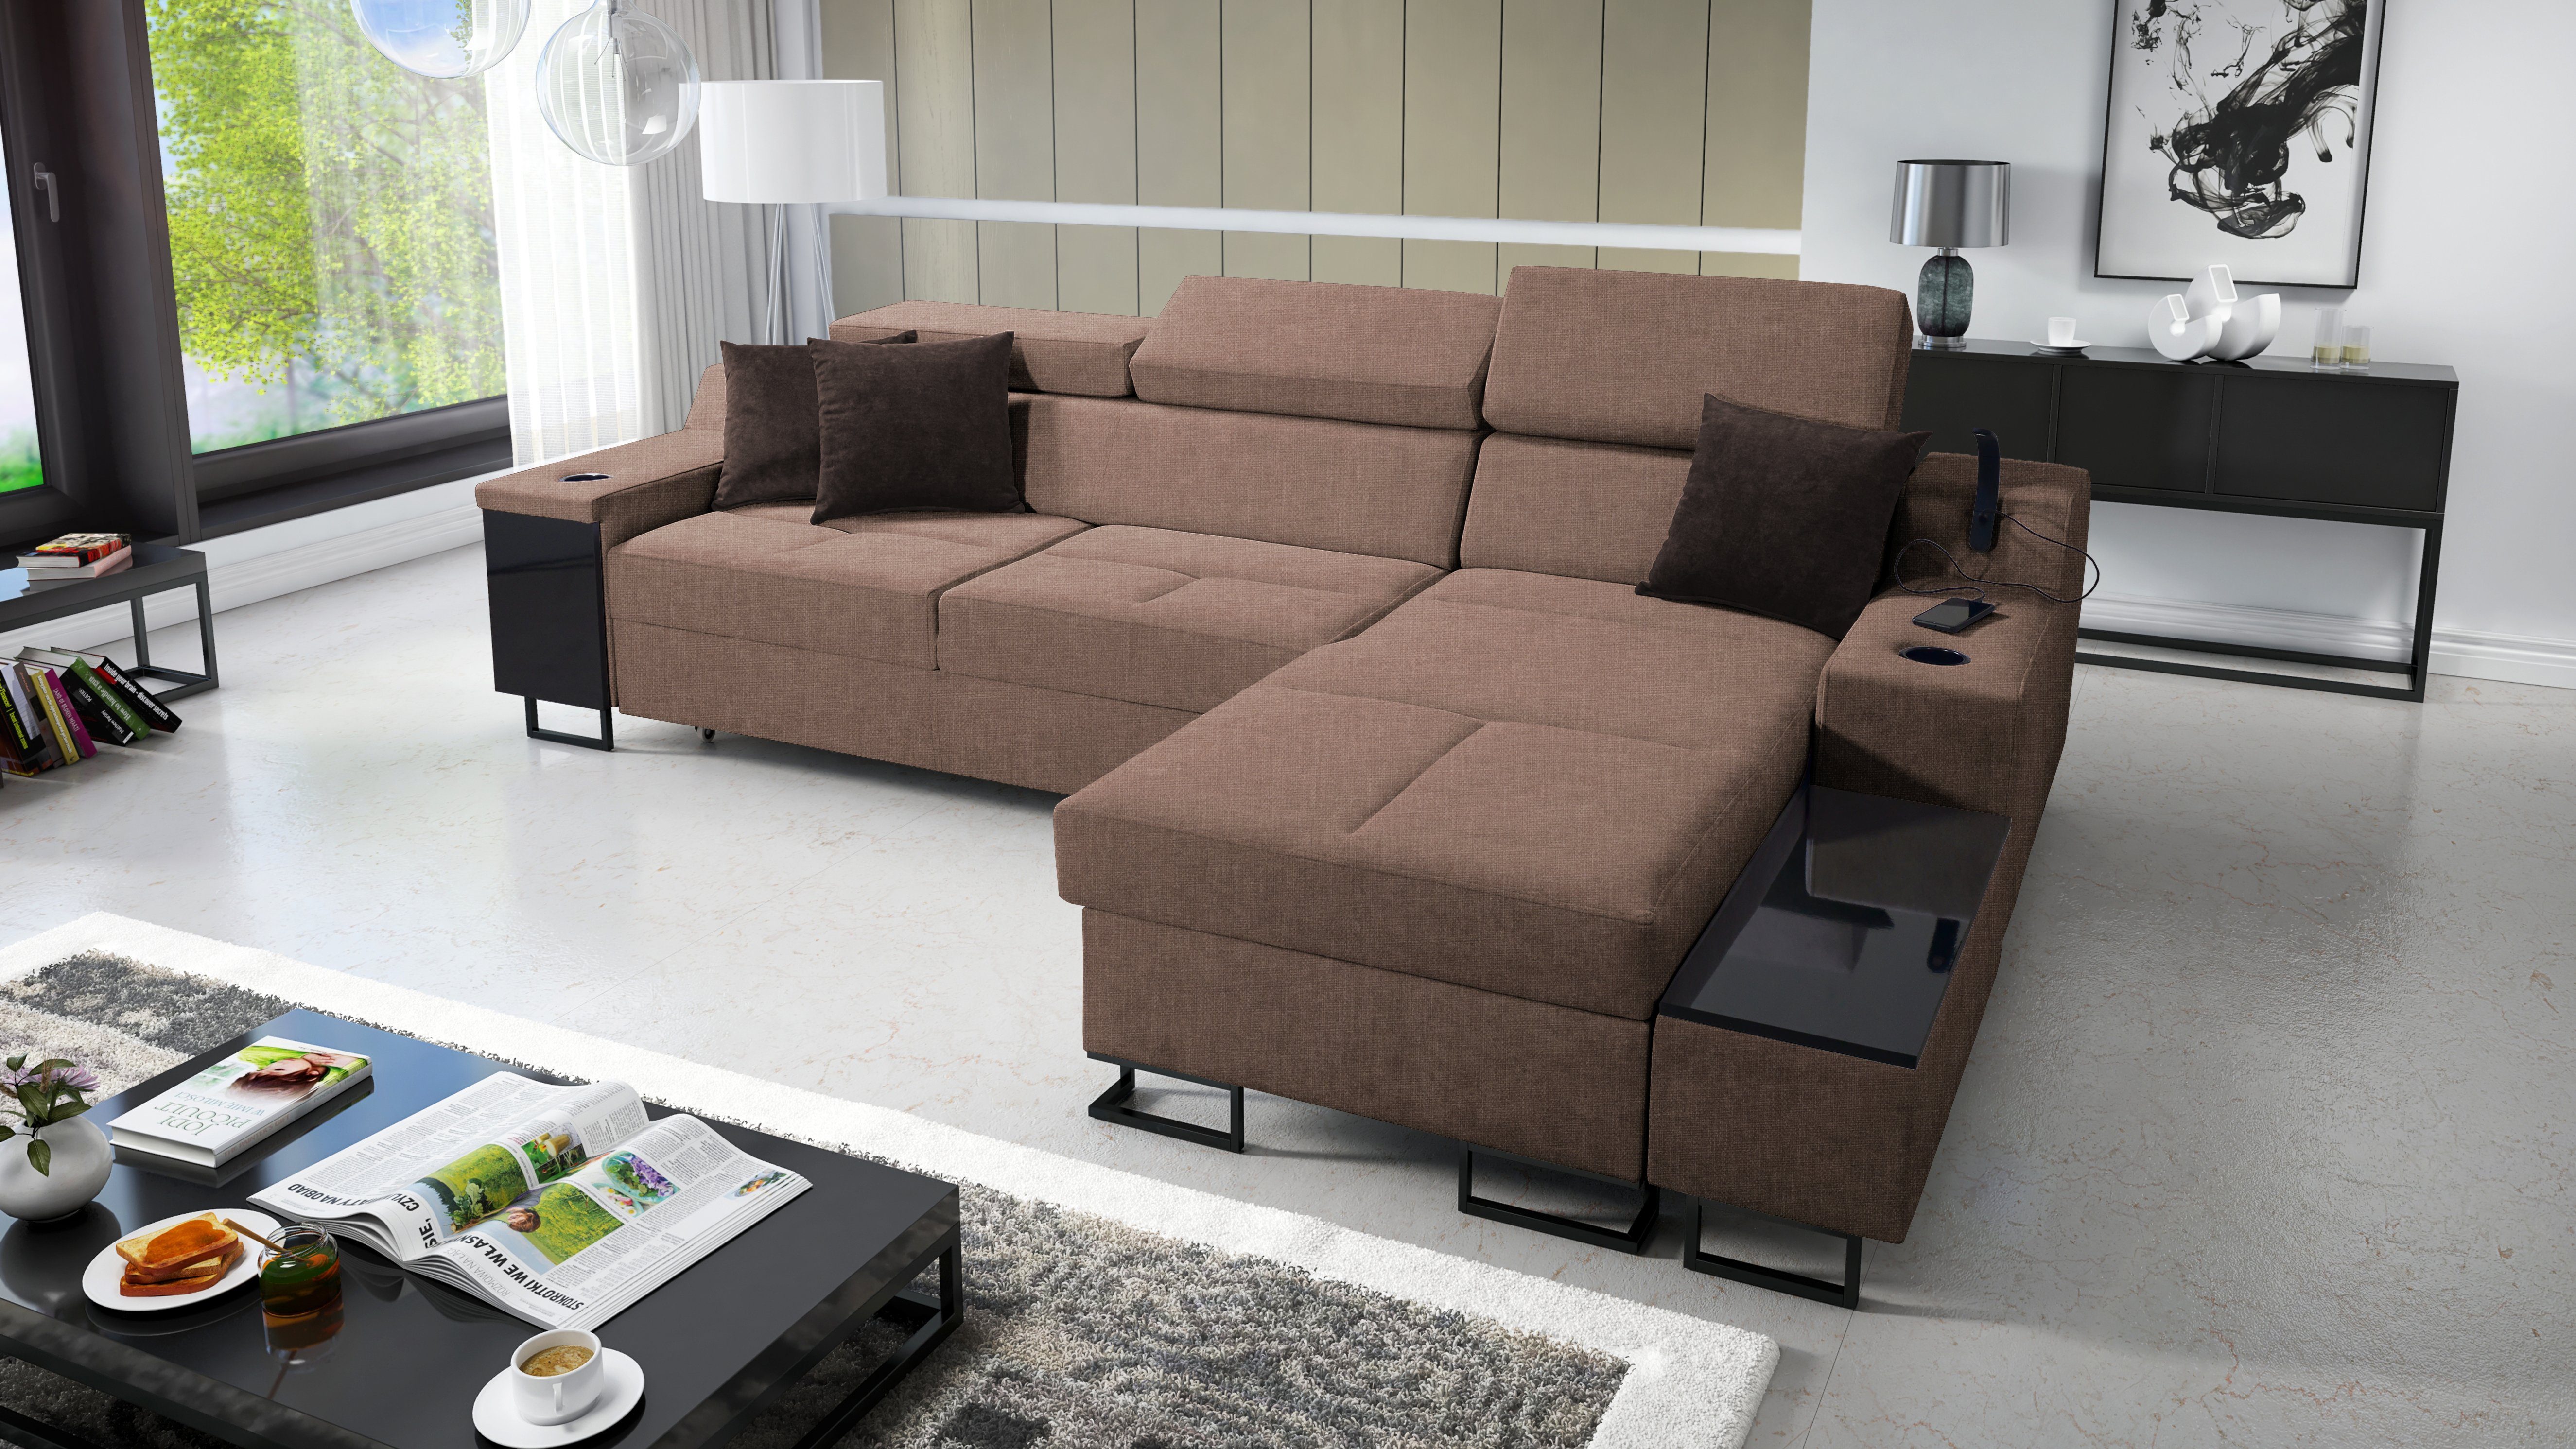 I for & Wohnzimmer für das Moderne Maxi: Bettkasten Schlaffunktion SAWANA25 Aria Home Ecksofa Best